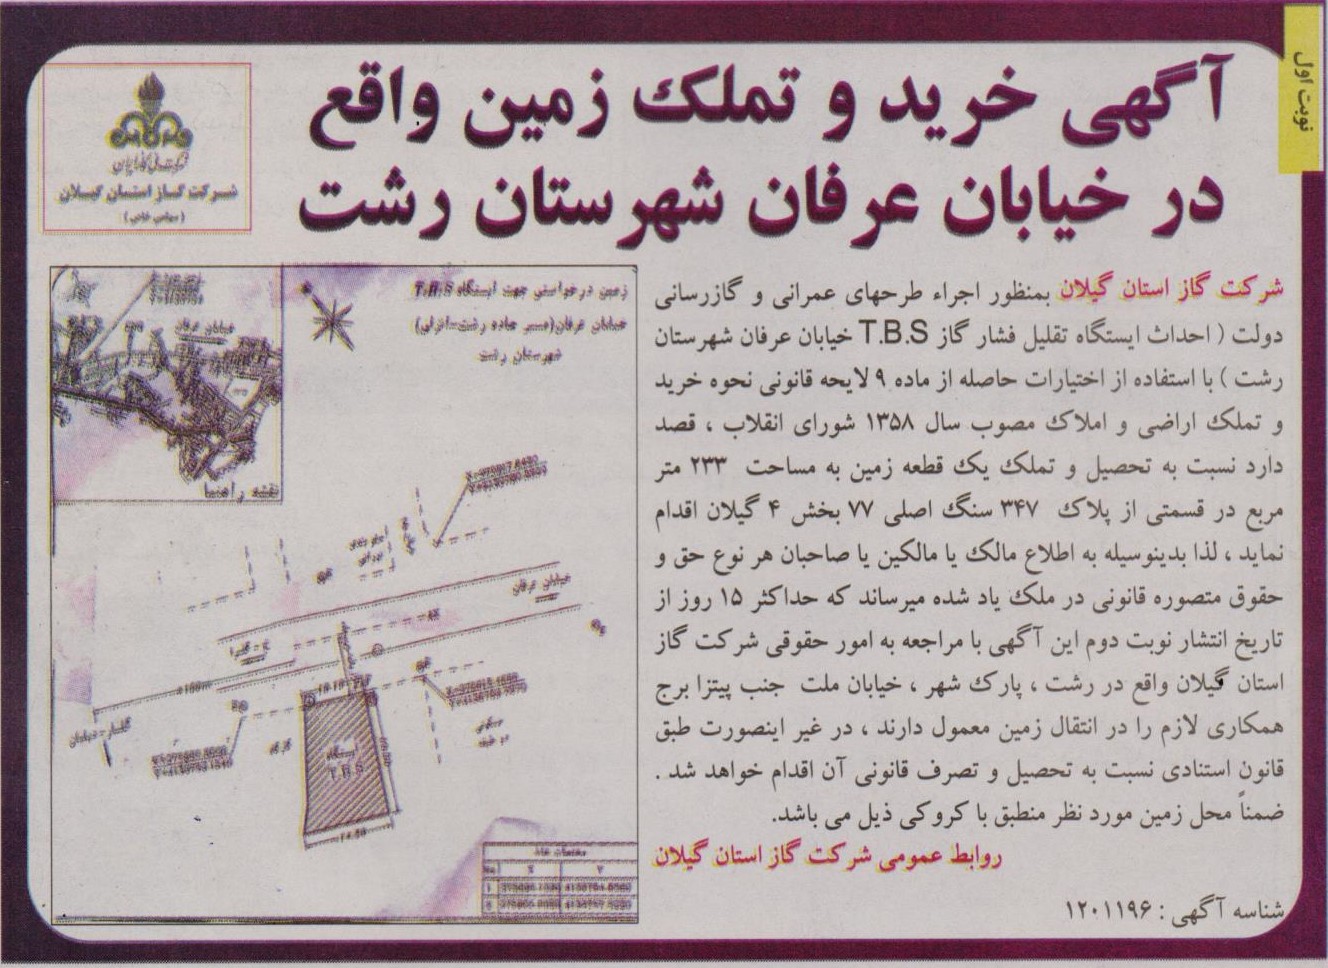 خرید و تملک زمین واقع در خیابان عرفان رشت - 17 مهر 1400